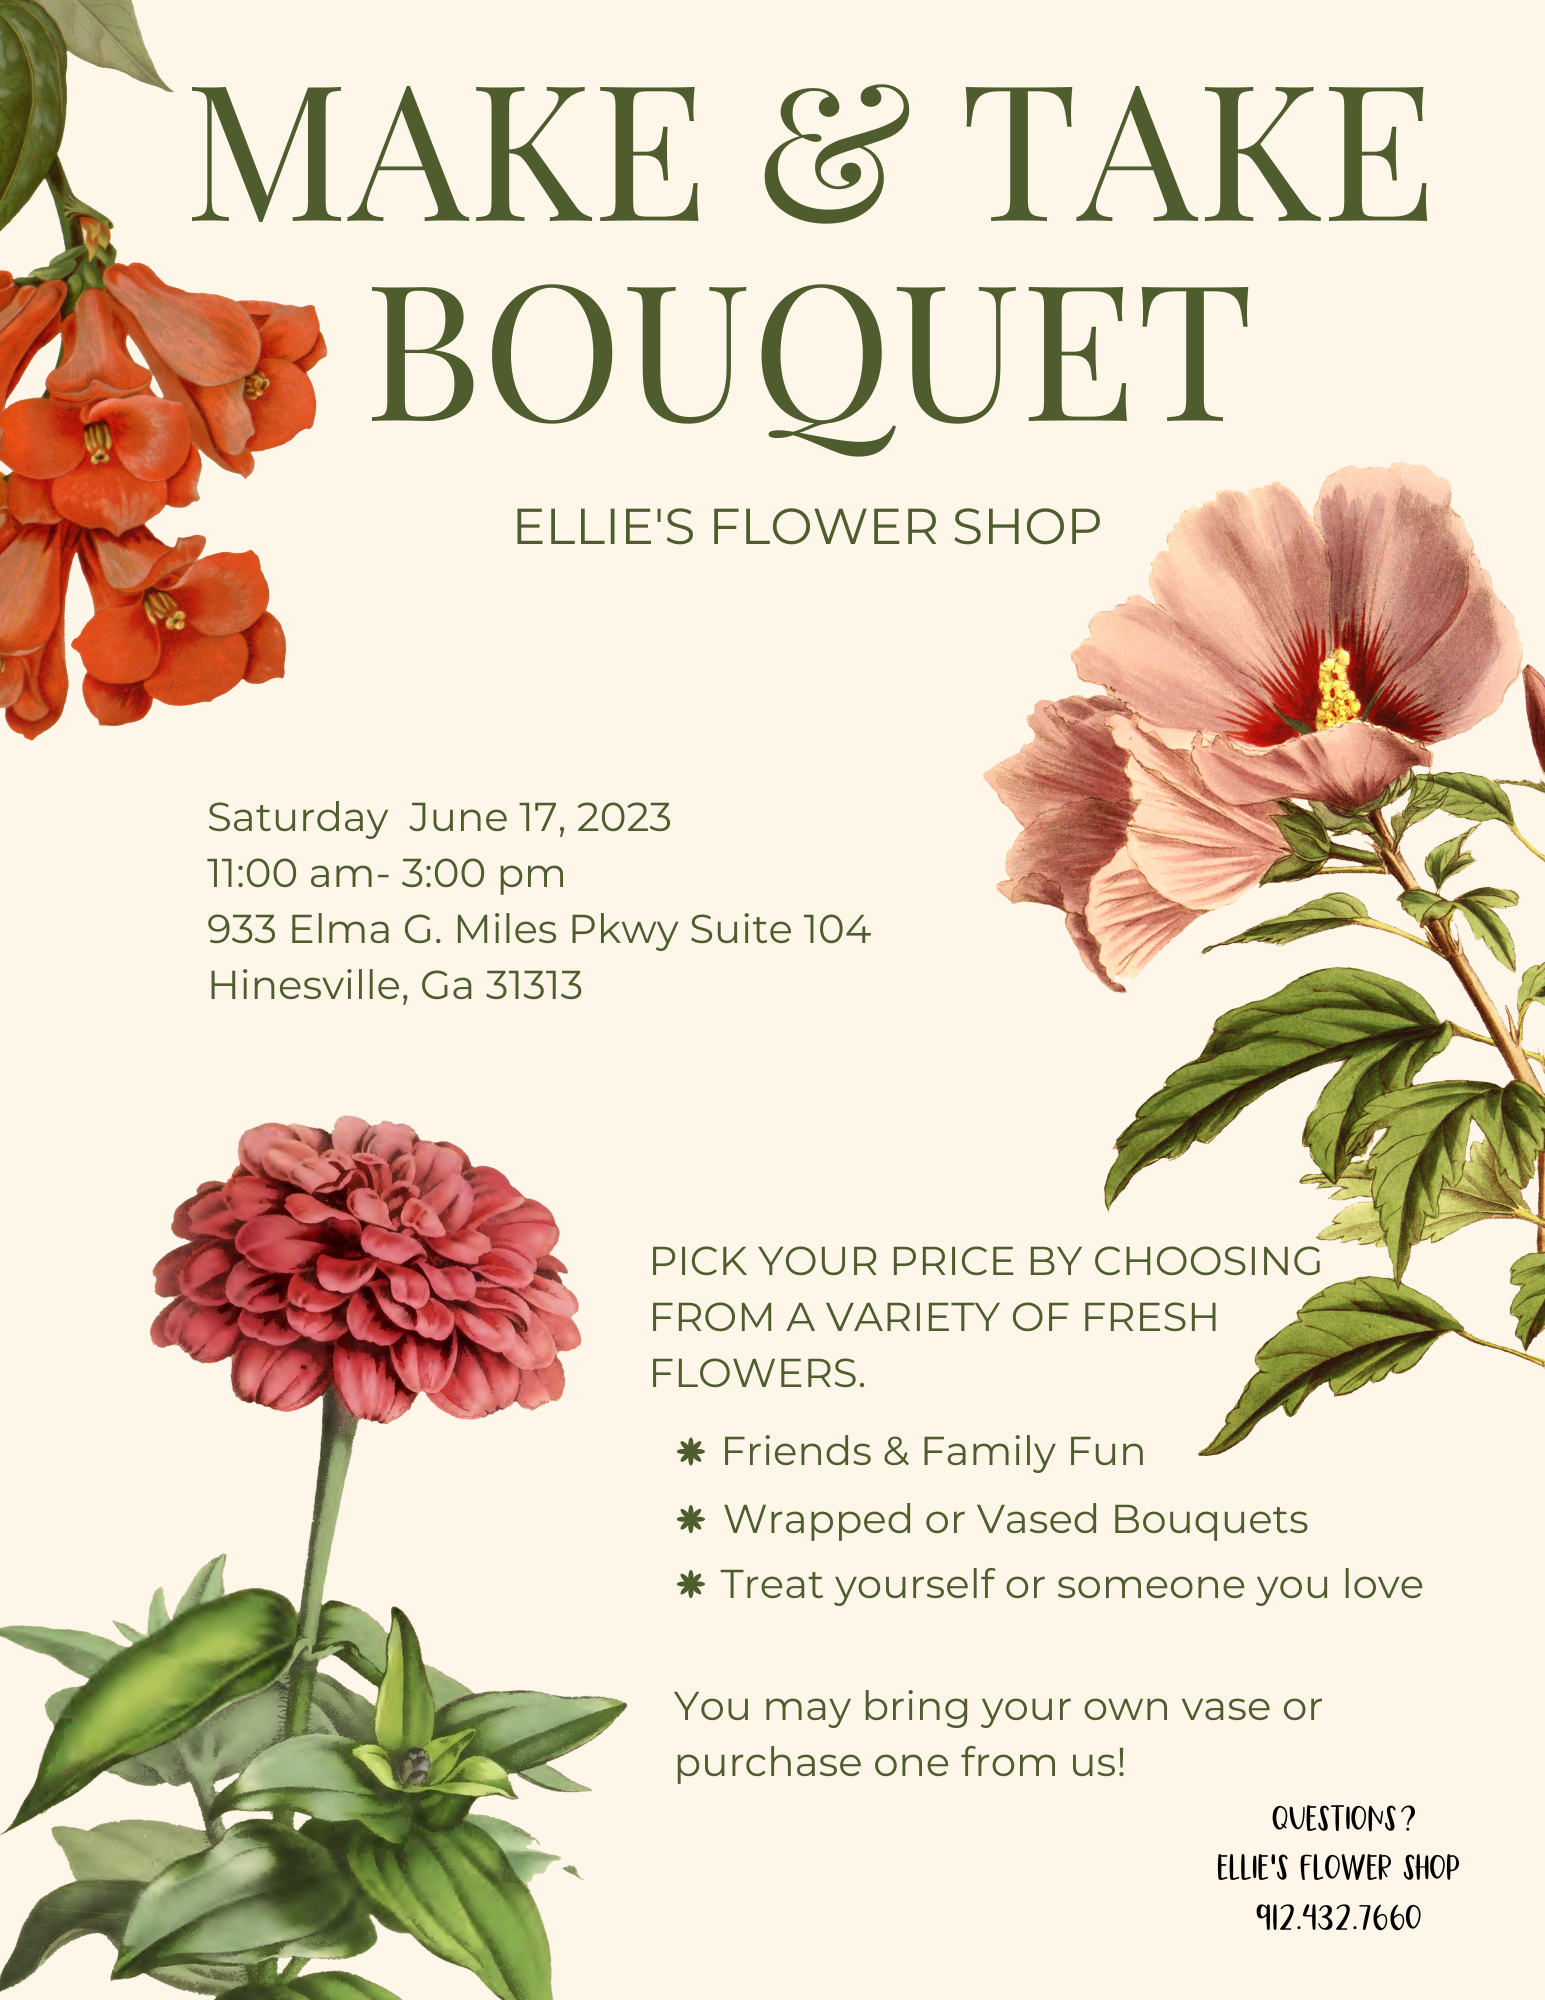 Make & Take Bouquet flyer